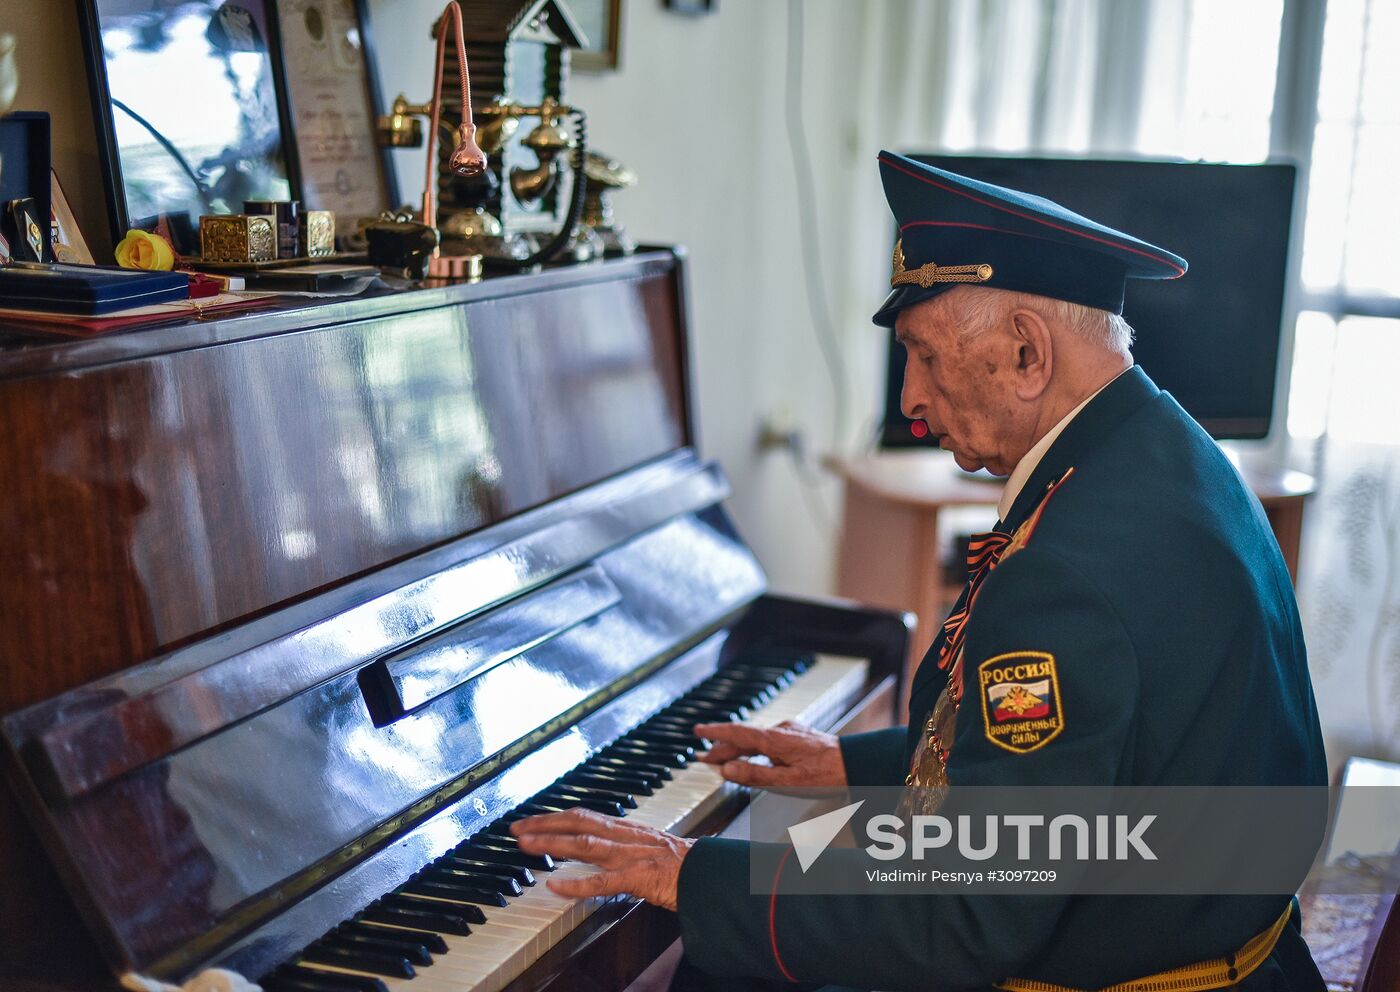 WWII veterans living in Israel